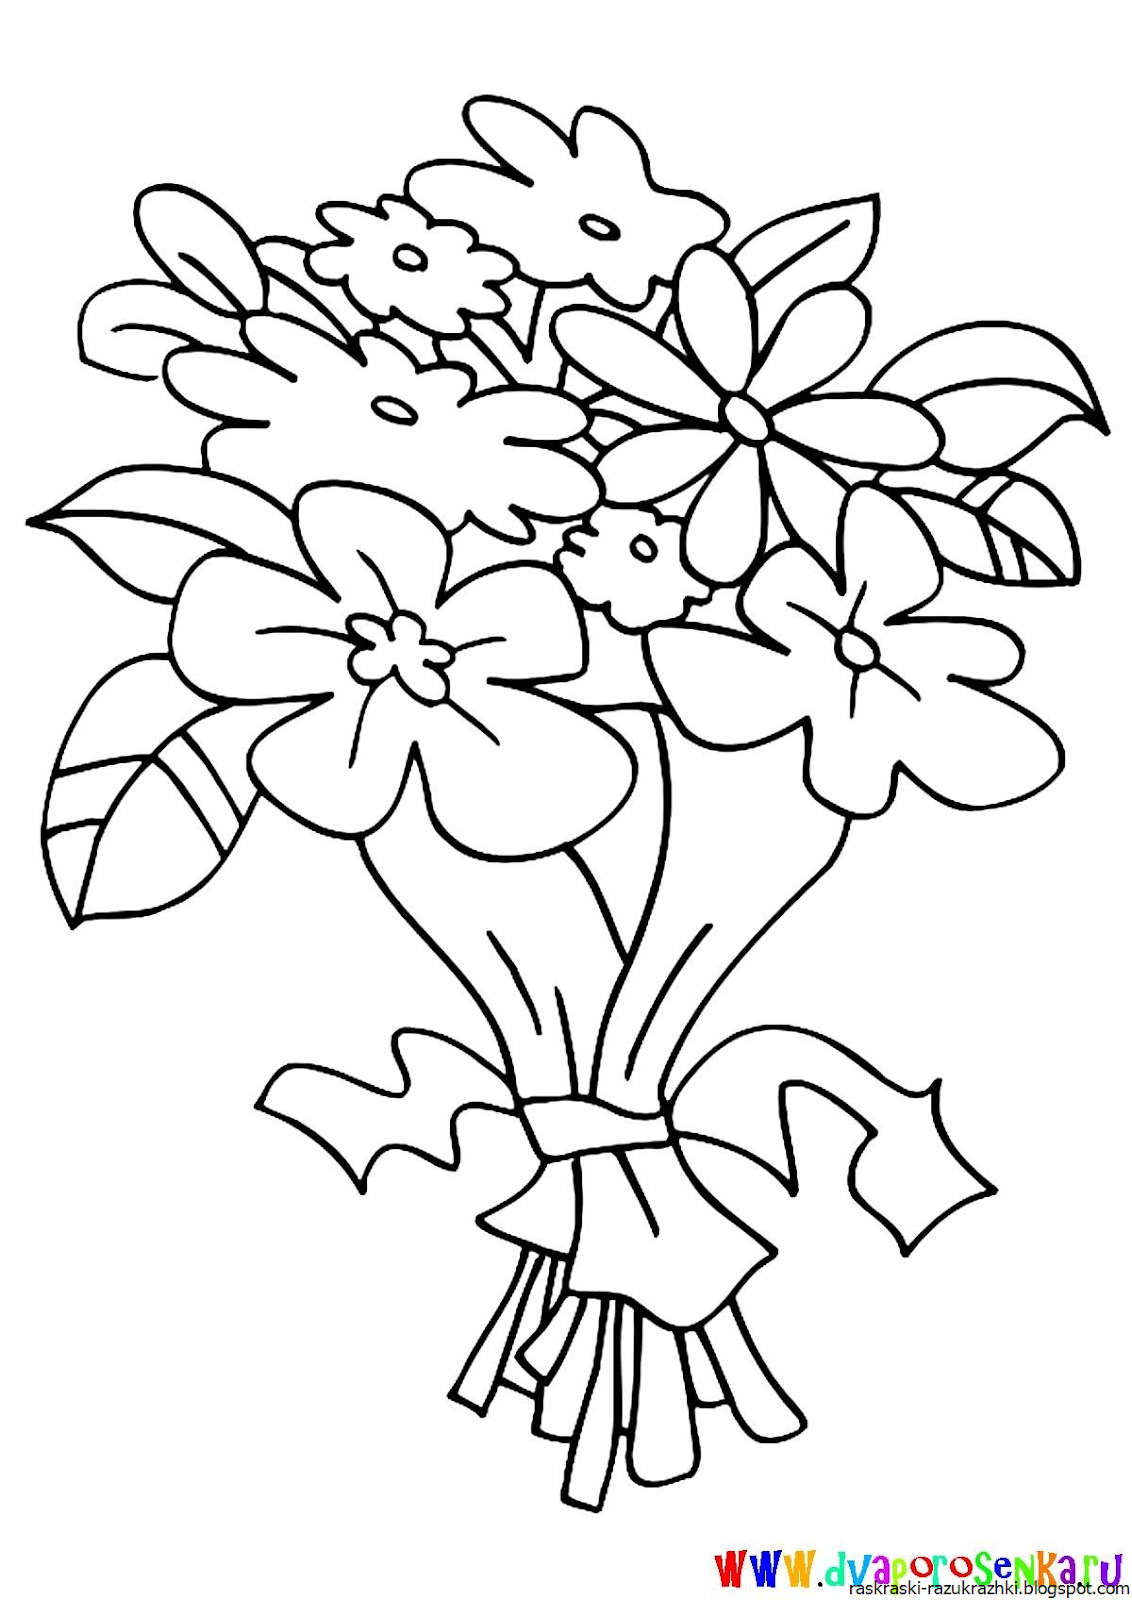 Раскраска букет цветов